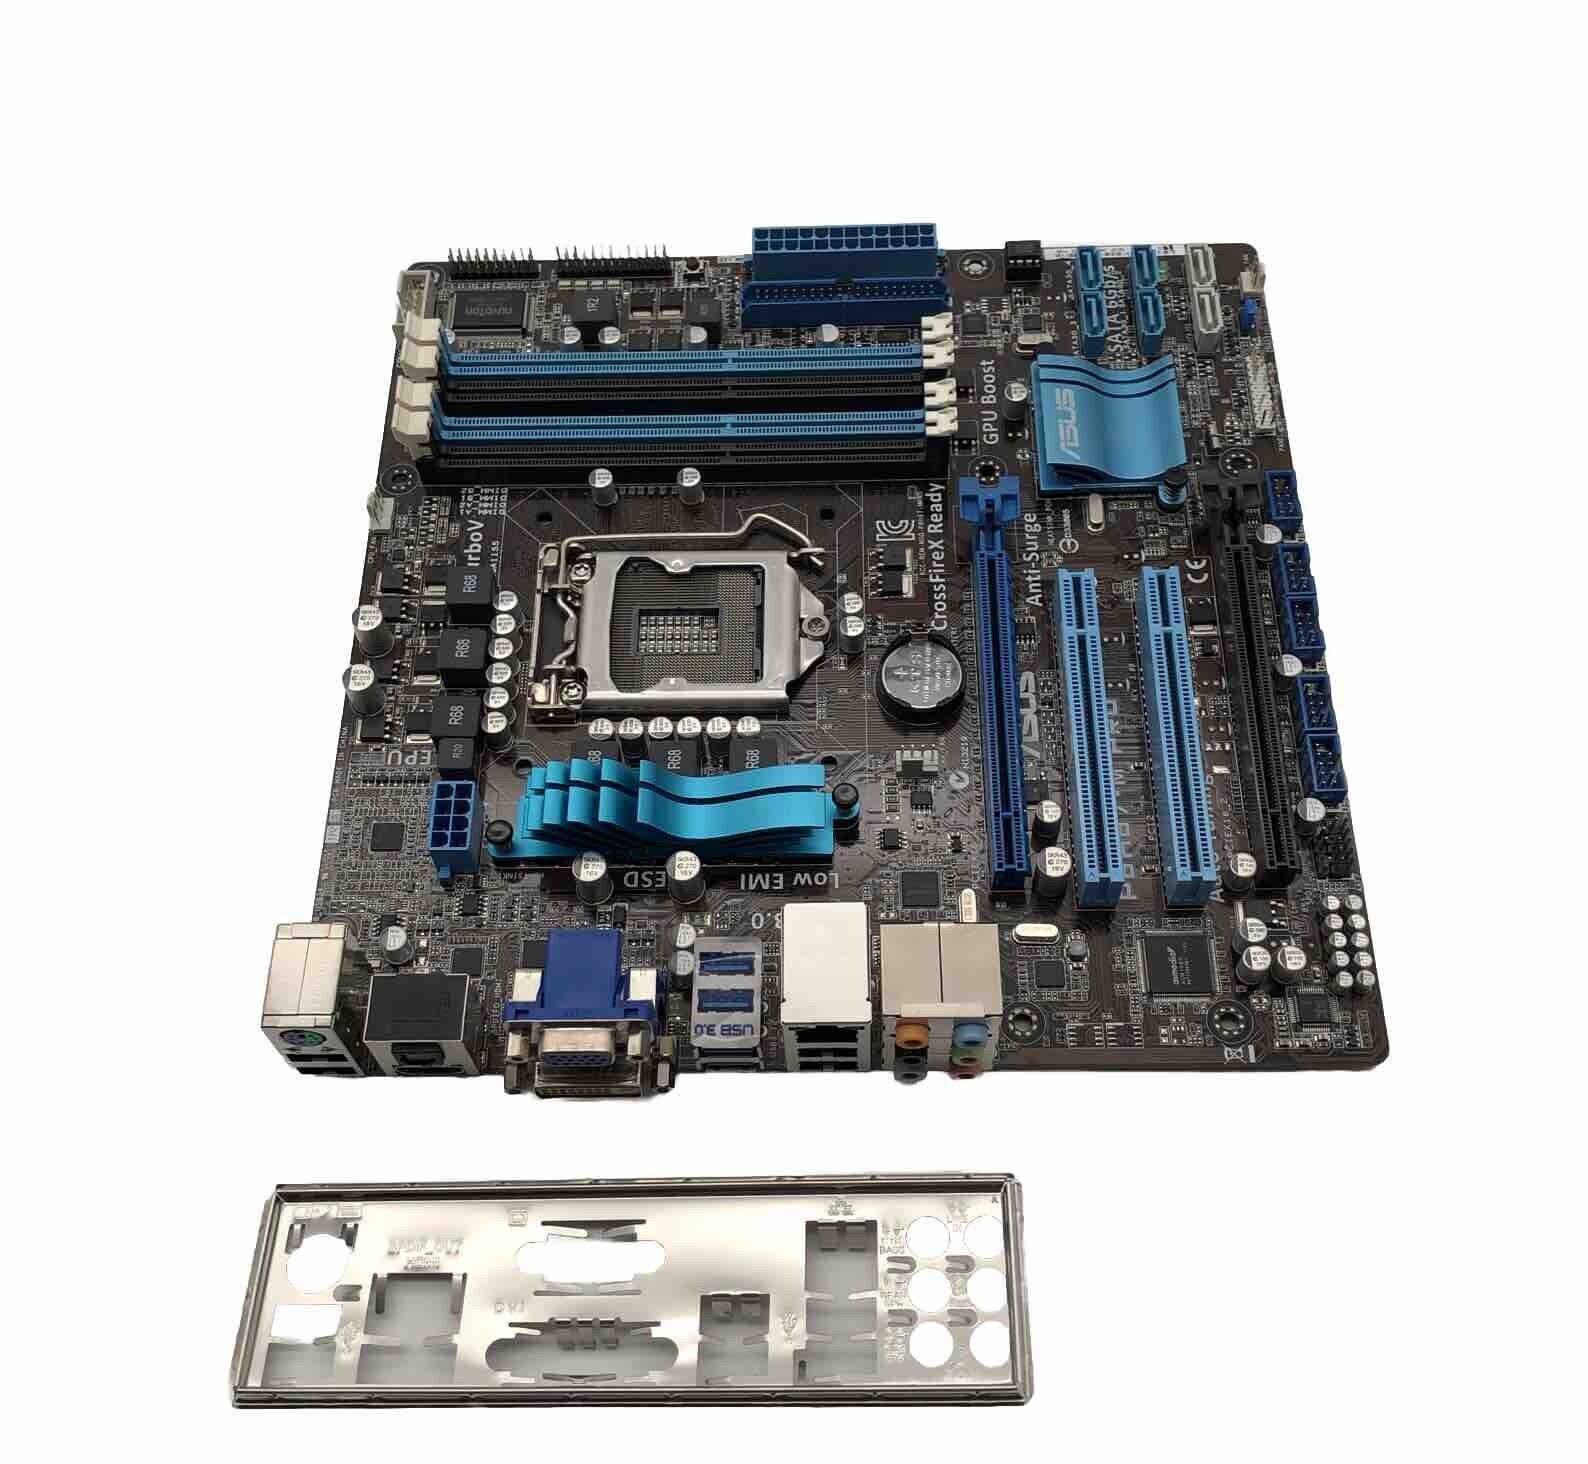 ASUS P8H67-M PRO - mATX Motherboard - LGA1155 Socket 1155 Motherboard - Intel H67